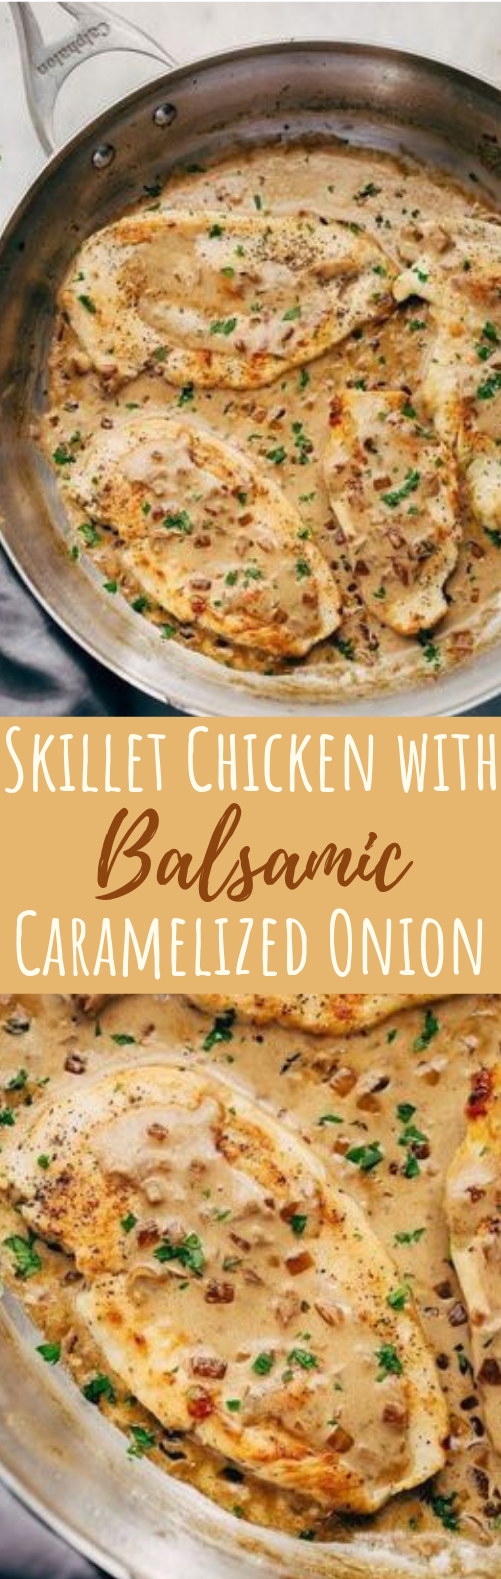 Skillet Chicken in Balsamic Caramelized Onion Cream Sauce #chickenrecipe #dinner